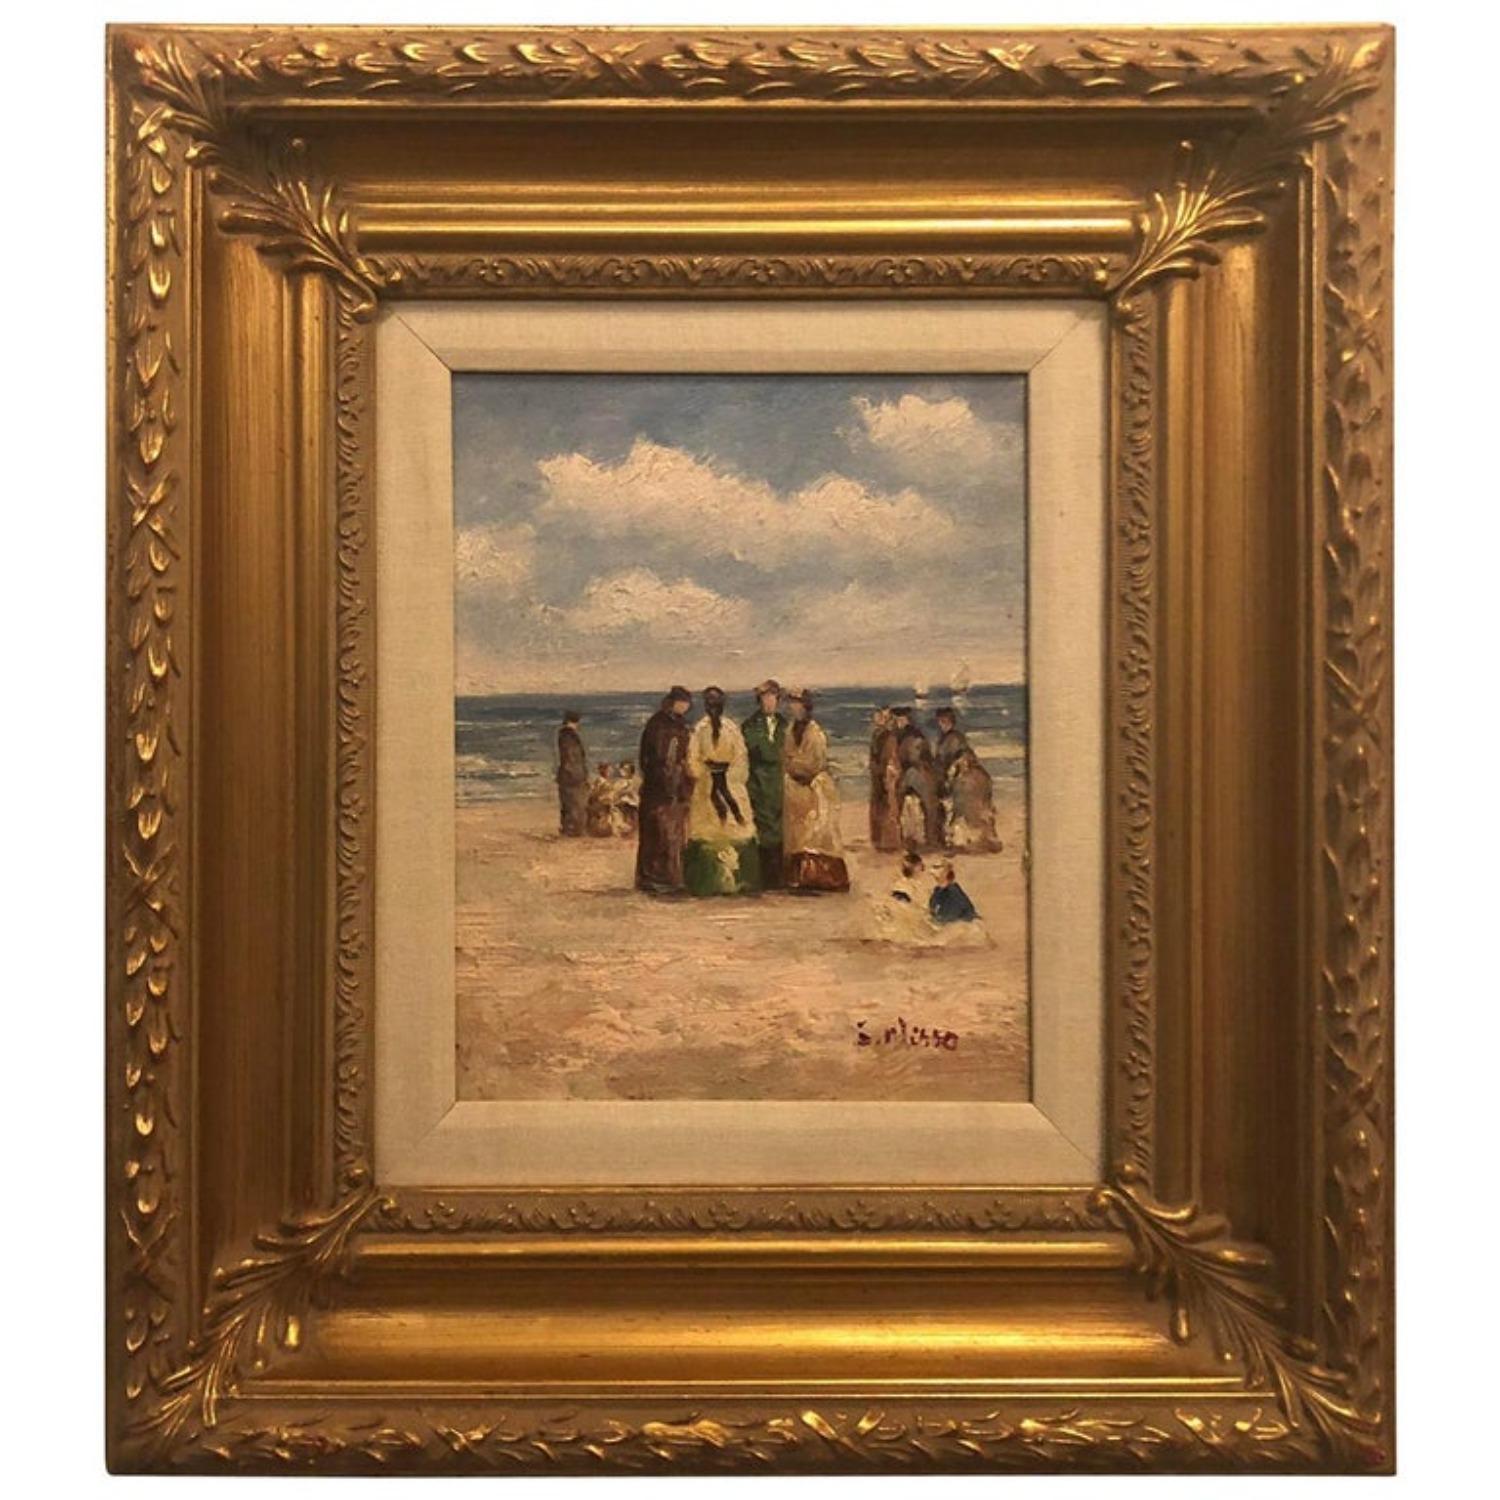 Unknown Landscape Painting – Impressionistisches Gemälde einer Strandszene, Öl auf Leinwand, 1980er Jahre, gerahmt und signiert